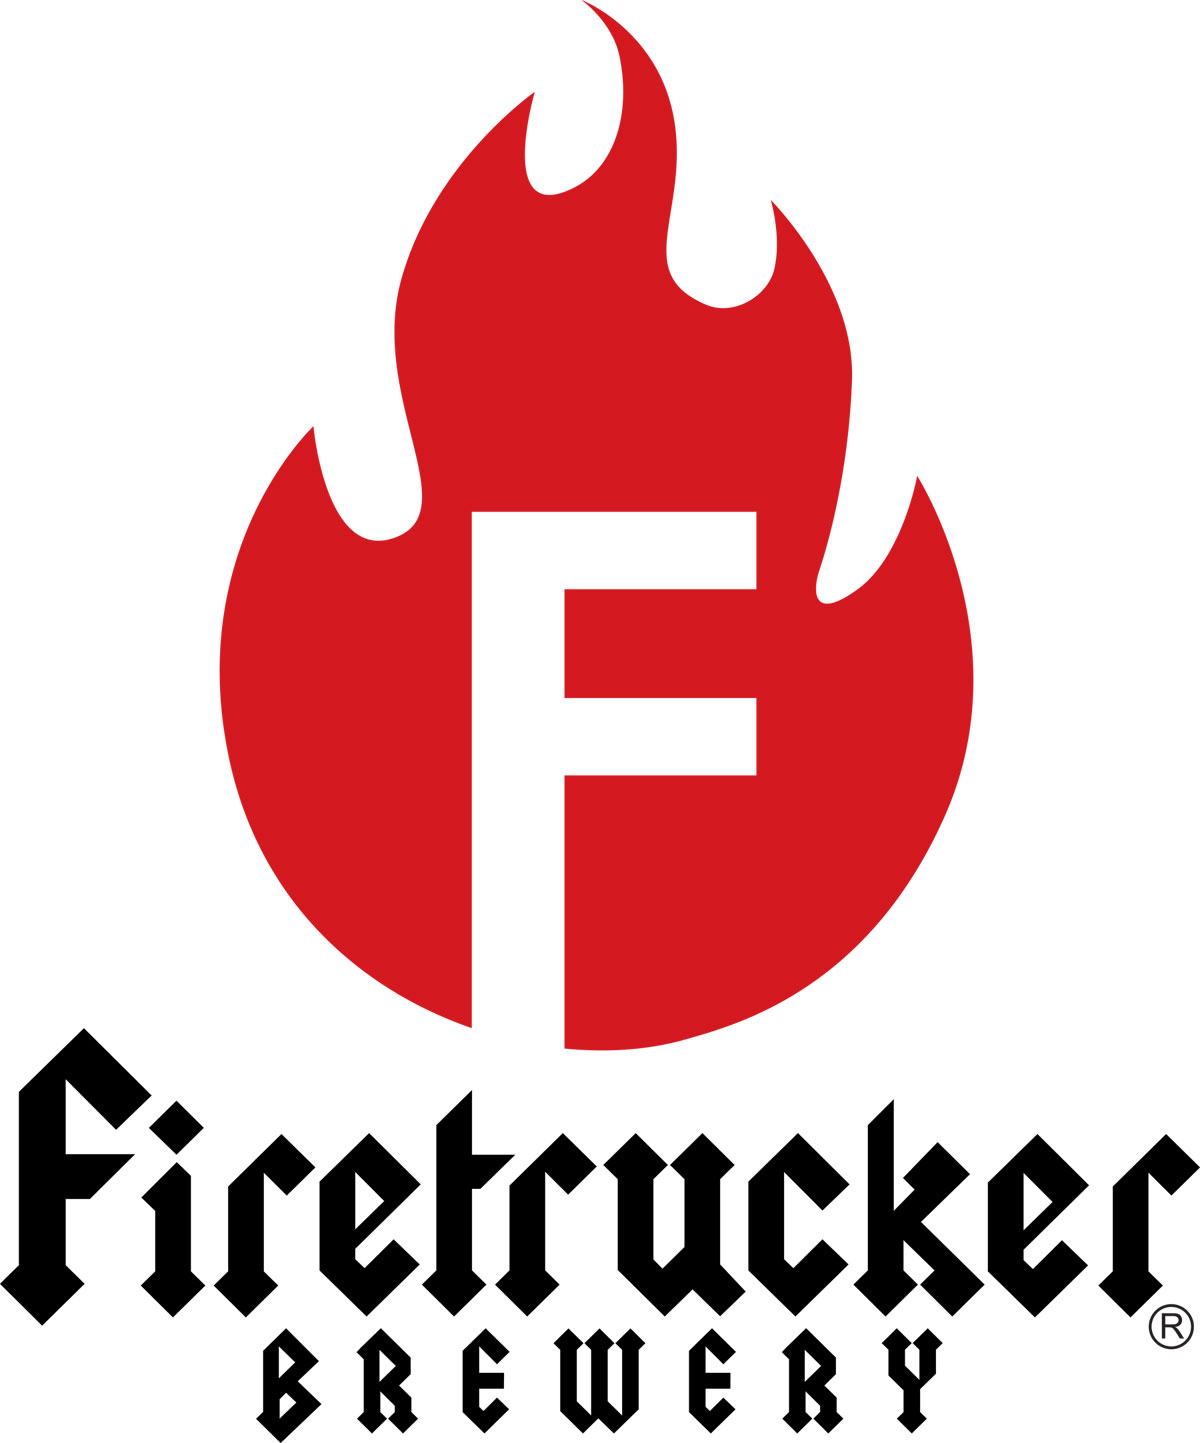 View Firetrucker Brewery